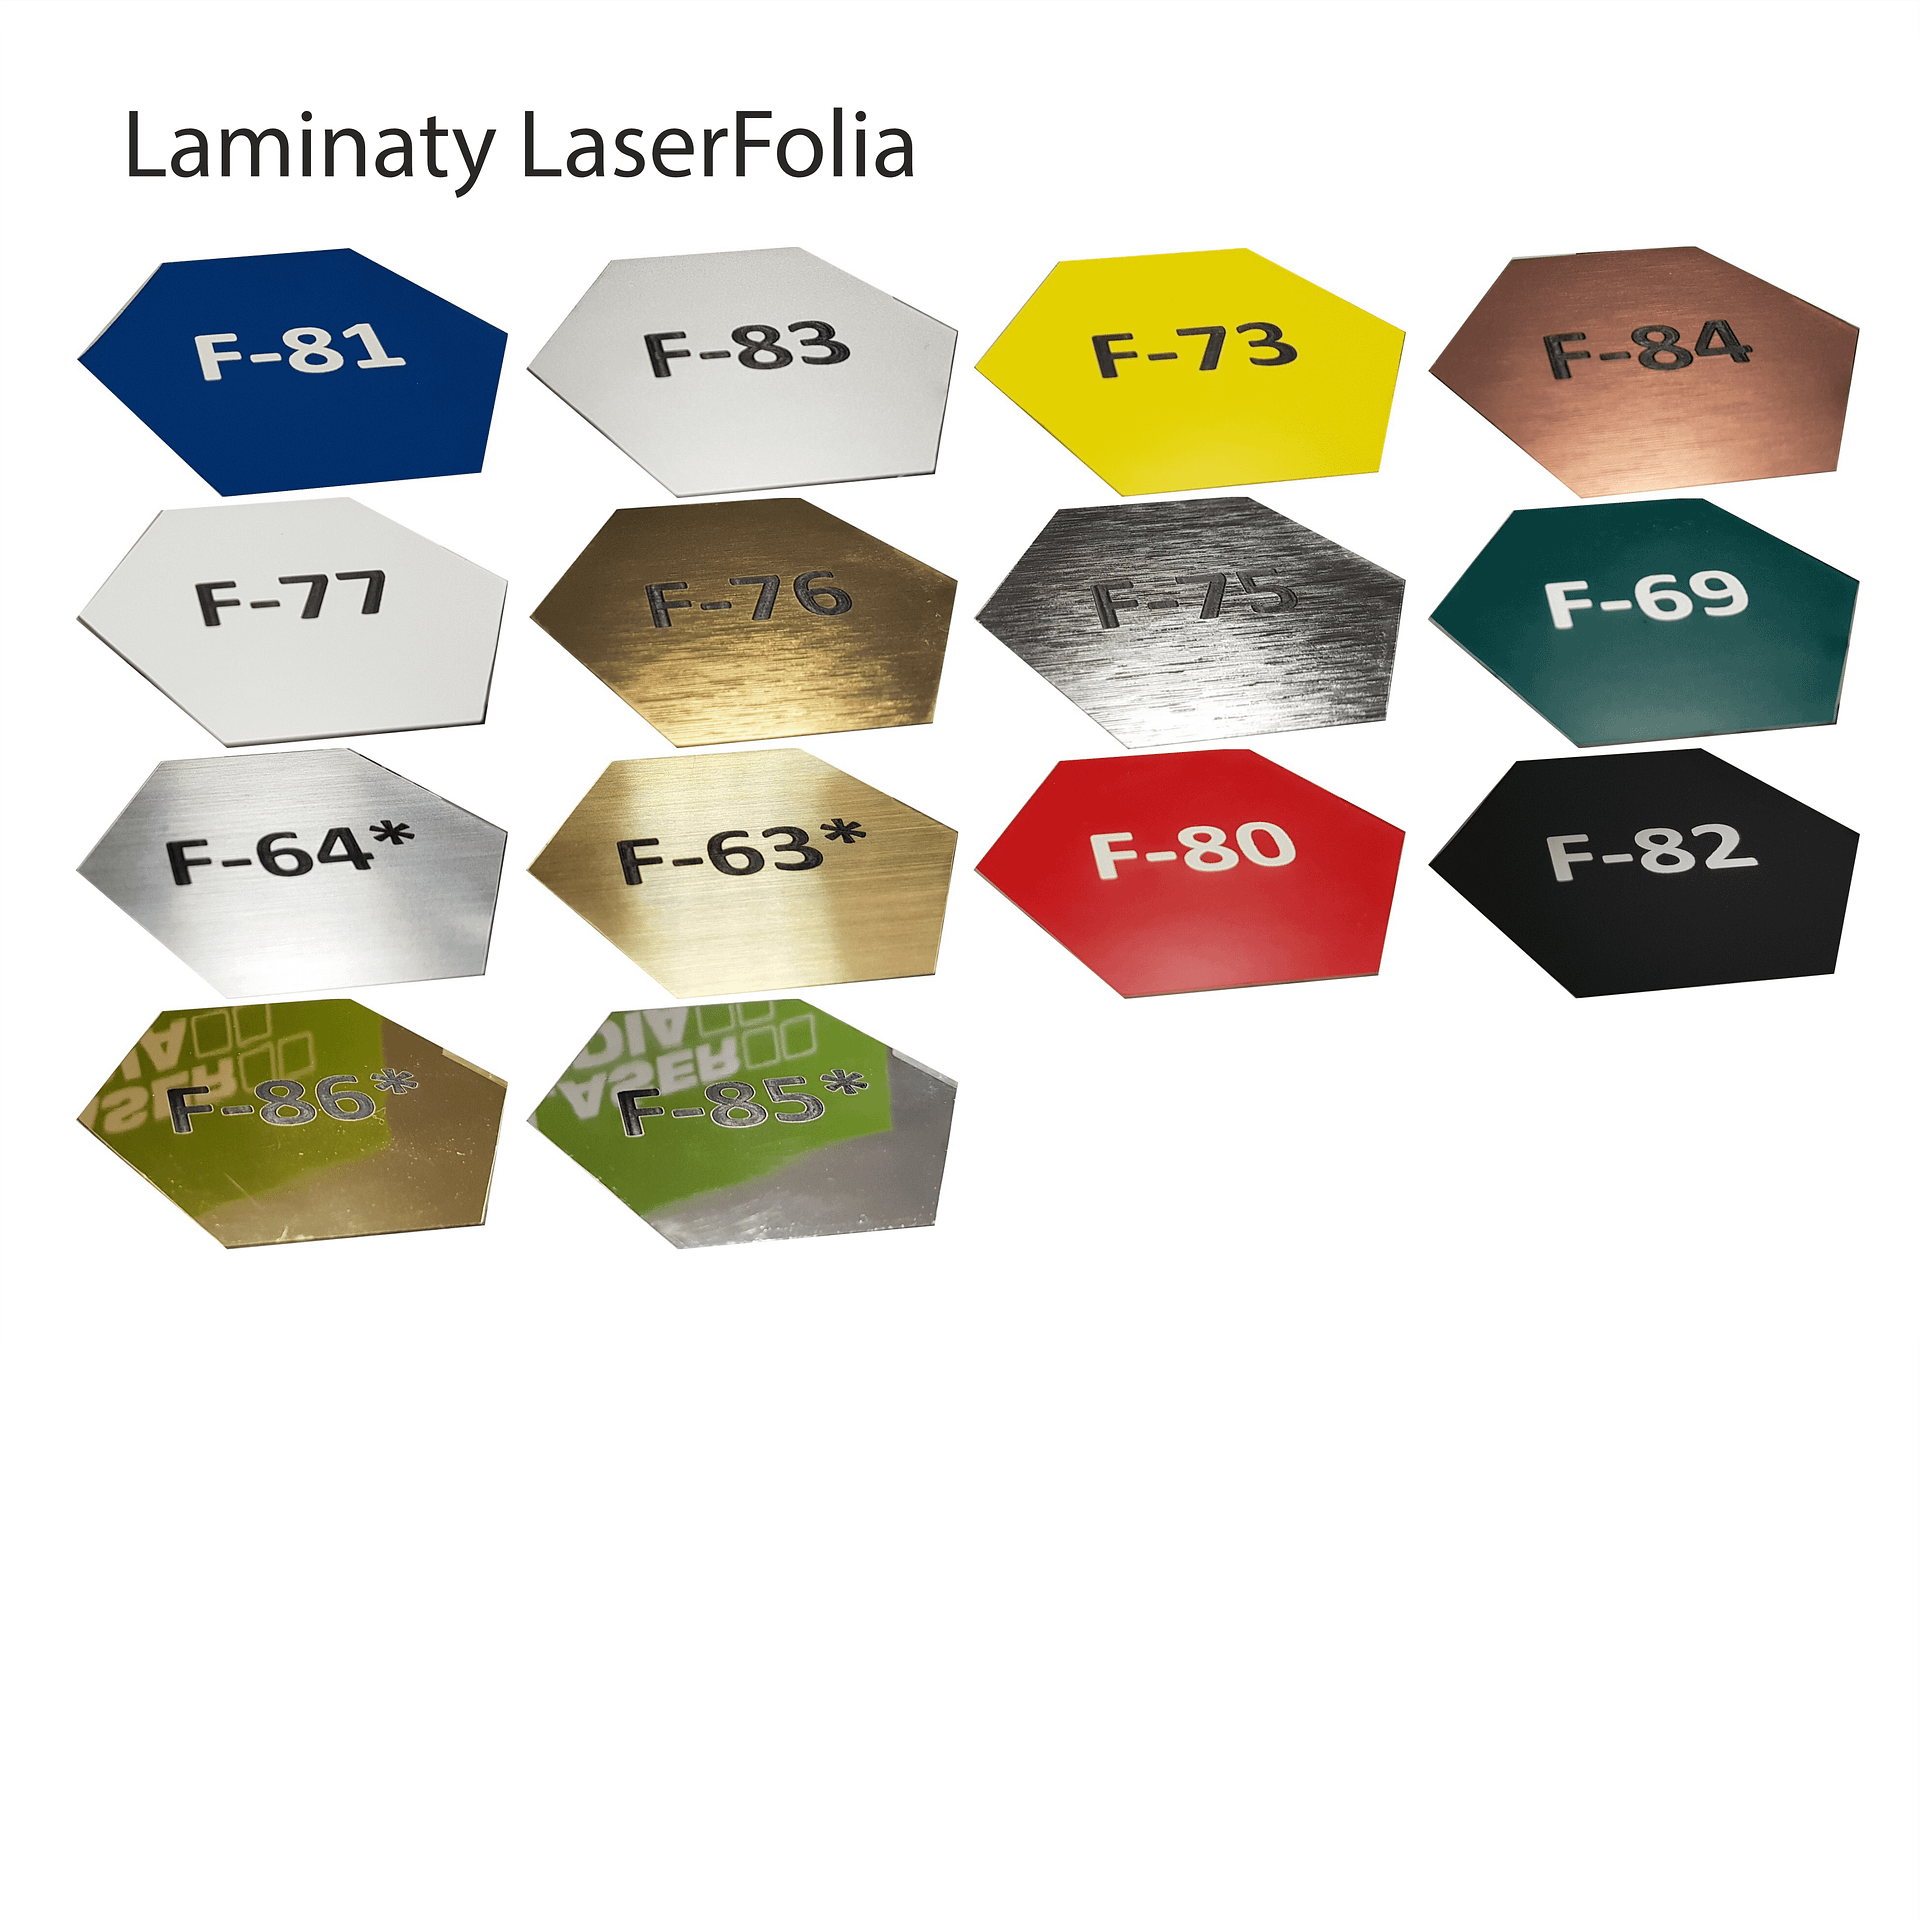 Laminaty Laserfolia